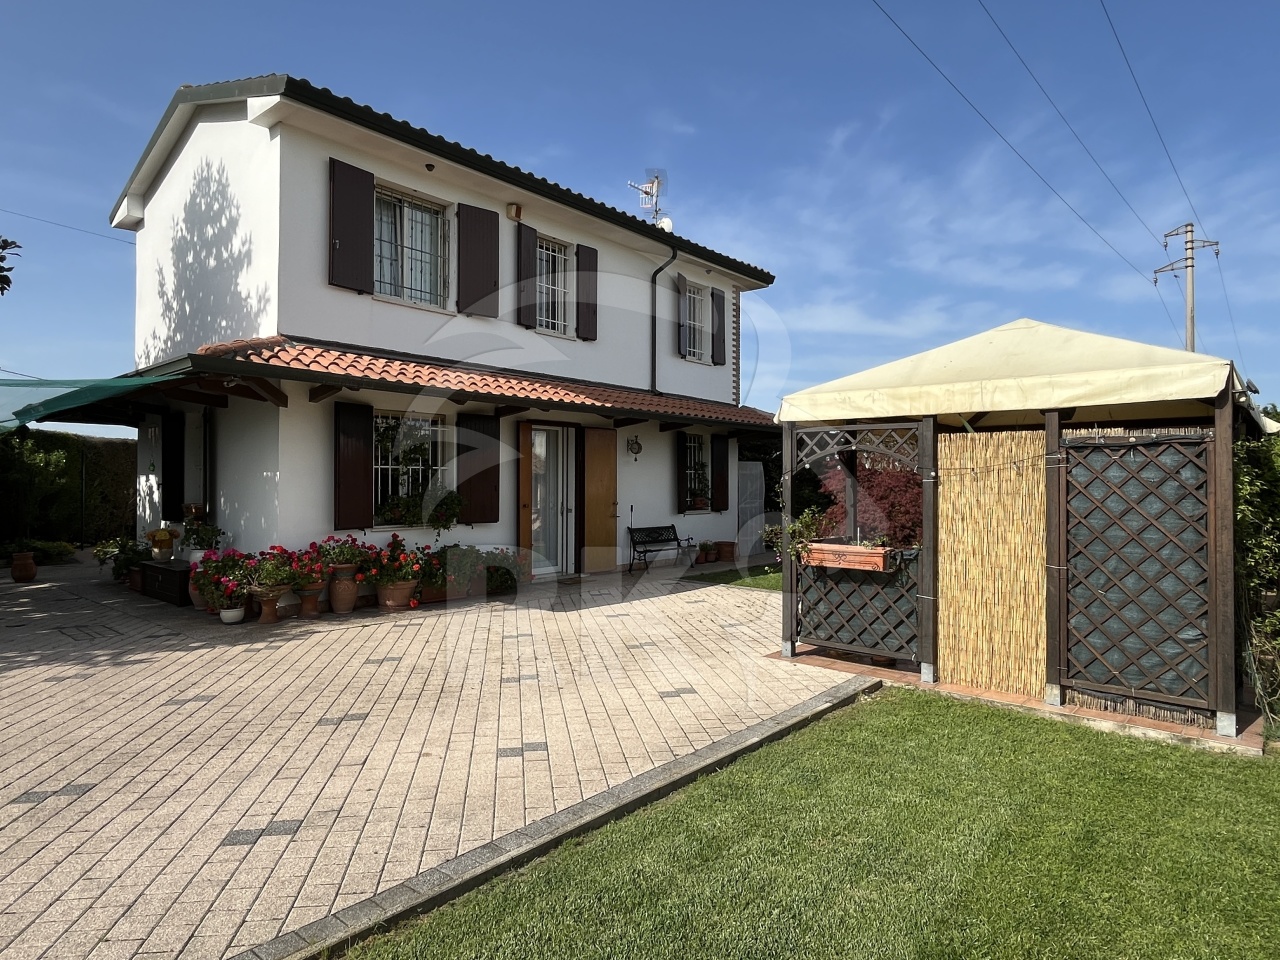 Villa in vendita a Ferrara, 9999 locali, prezzo € 260.000 | PortaleAgenzieImmobiliari.it